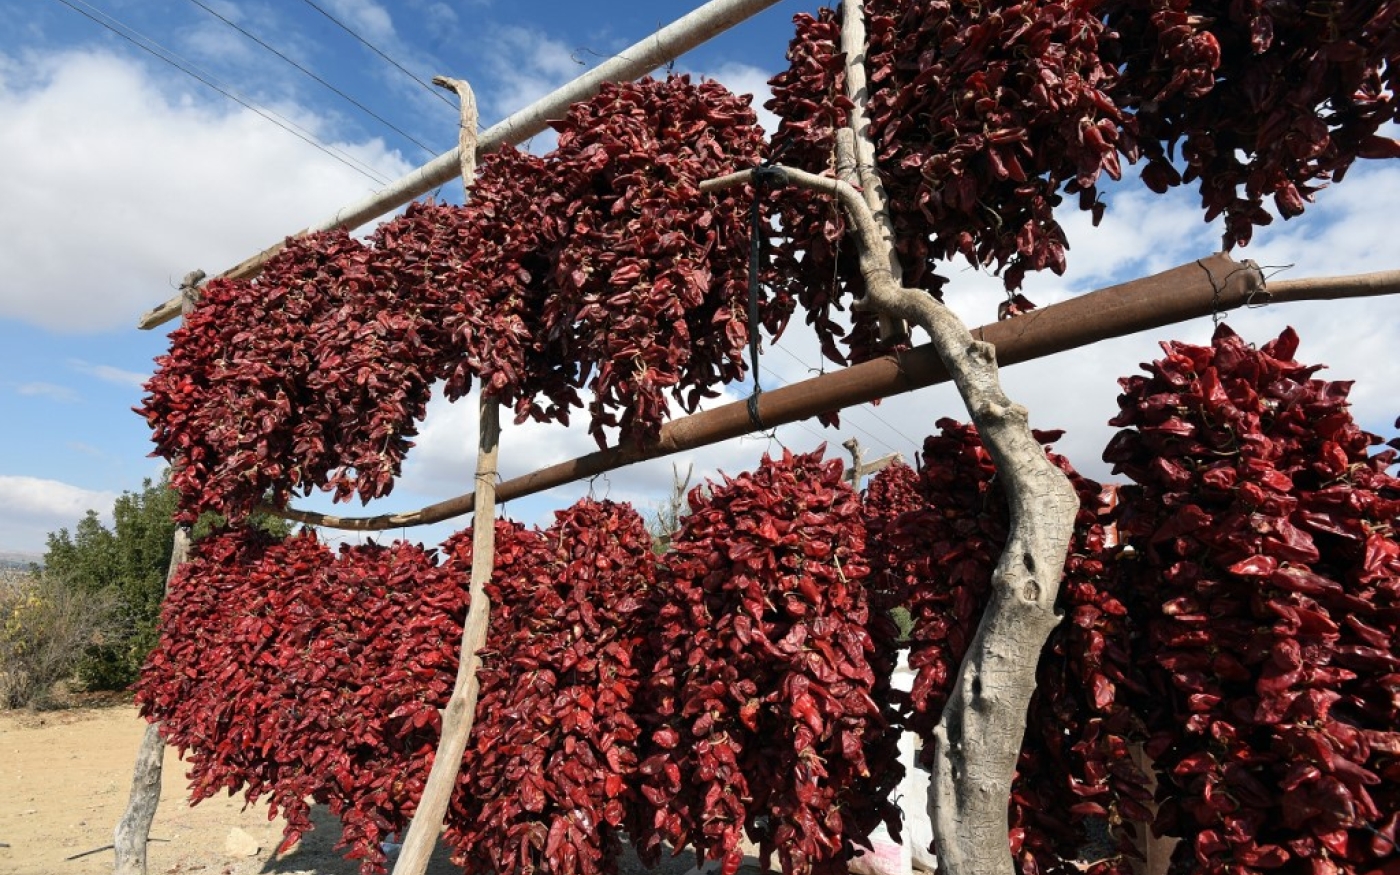 Des piments rouges utilisés dans la fabrication de la harissa sèchent à Kairouan, à environ 160 kilomètres au sud de Tunis, le 15 décembre 2015 (AFP/Fethi Belaïd)